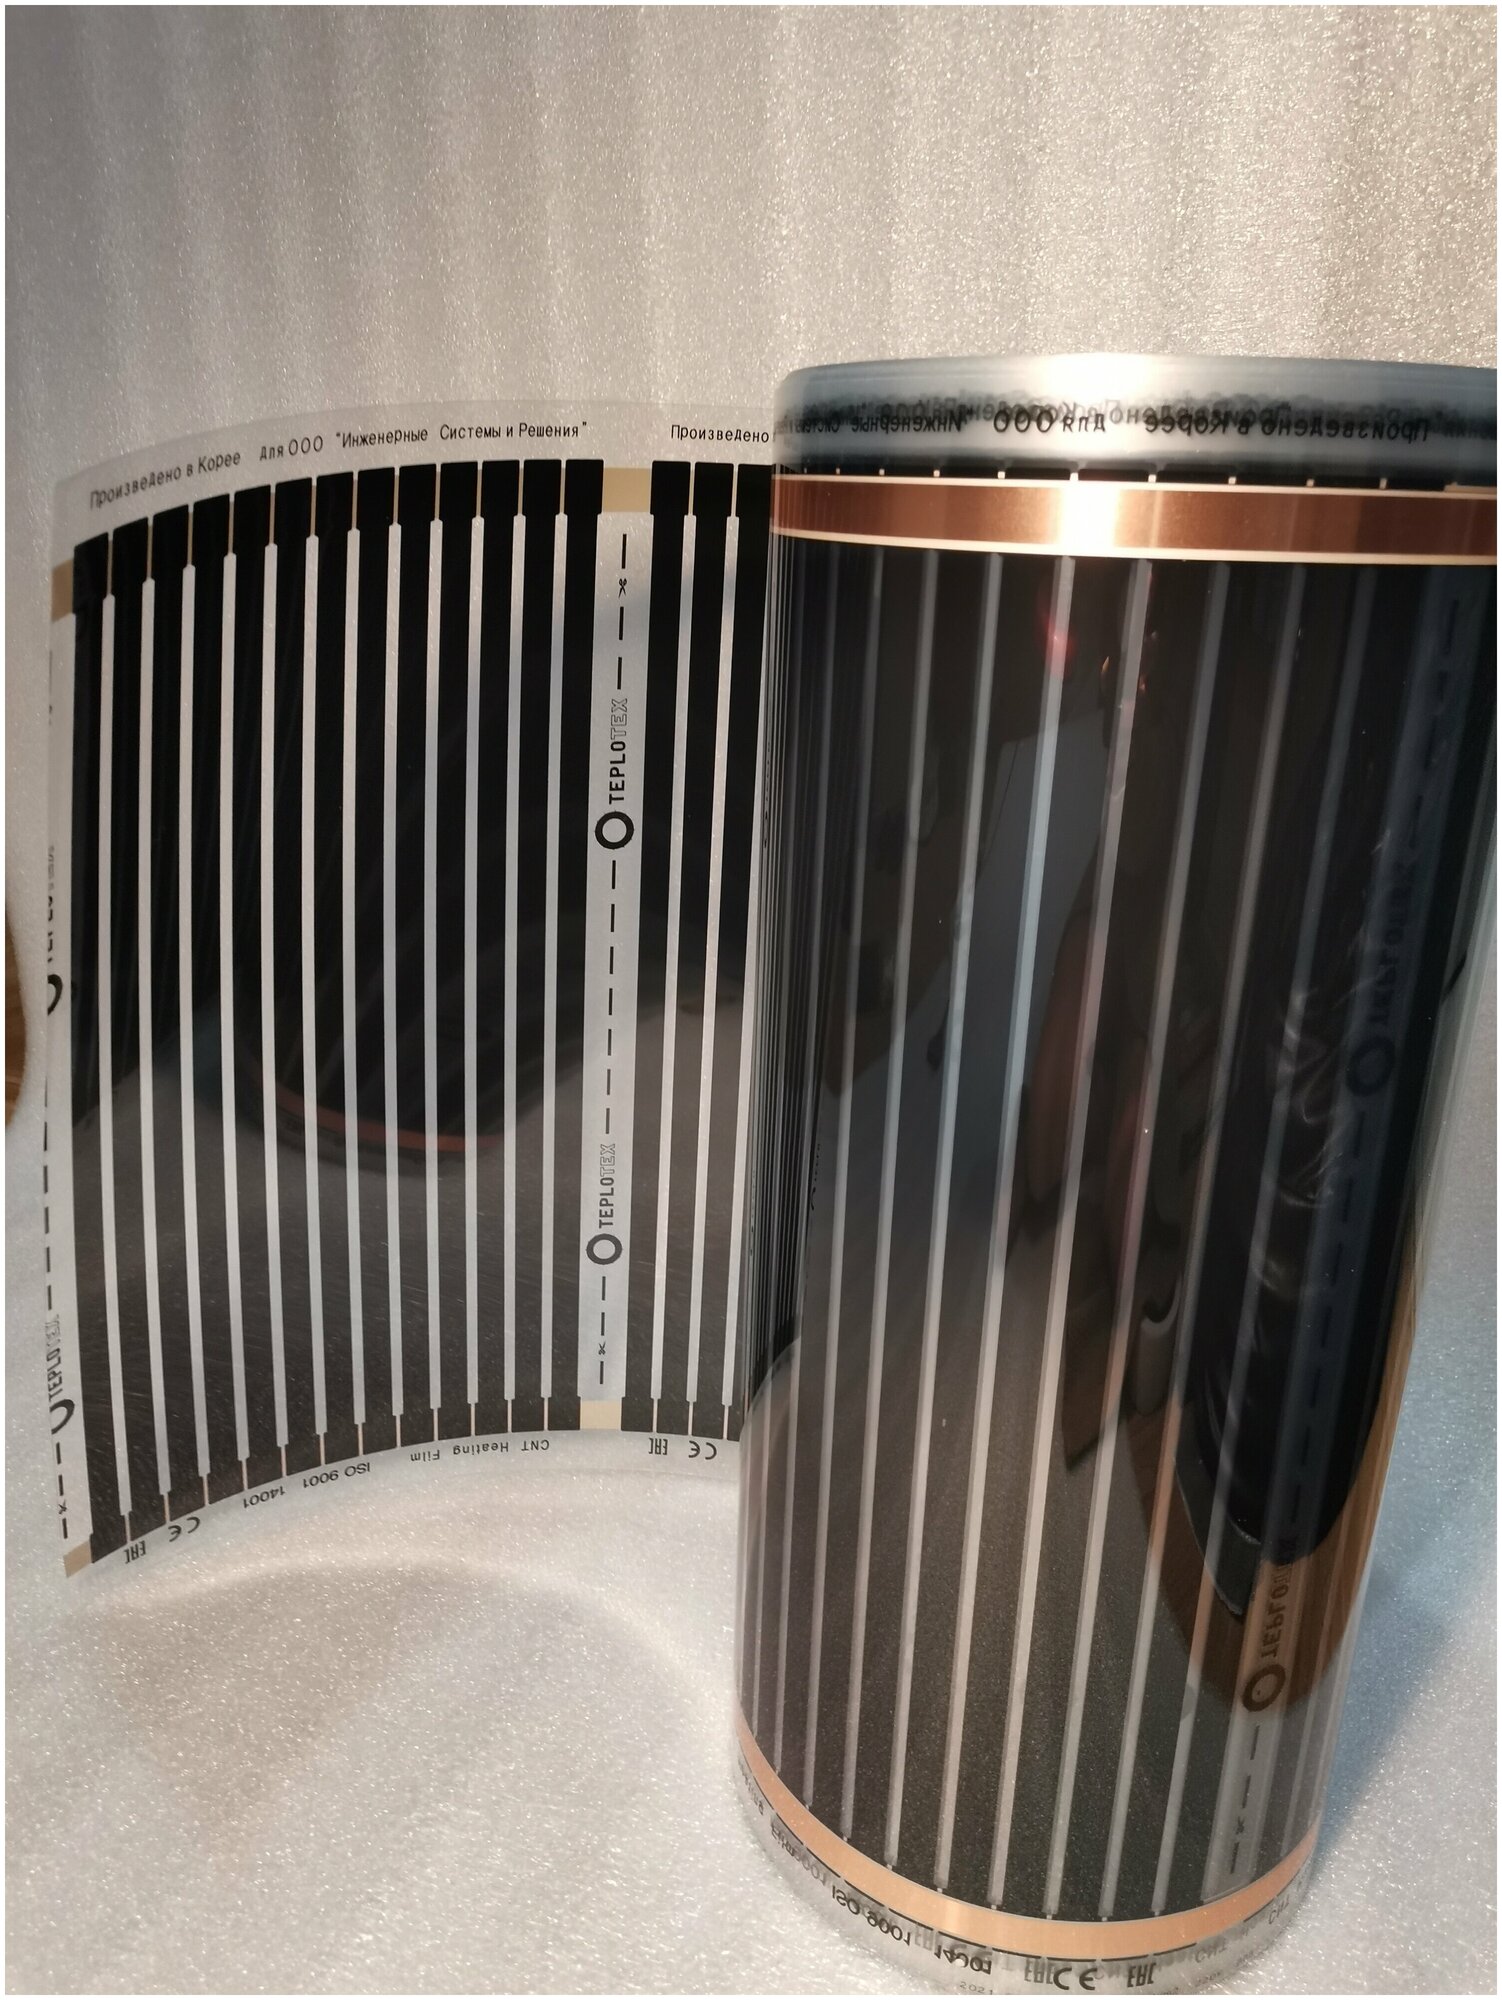 Теплый пол готовый комплект: инфракрасная пленка 0,5м на 1.75м, терморегулятор, комплектующие - фотография № 3